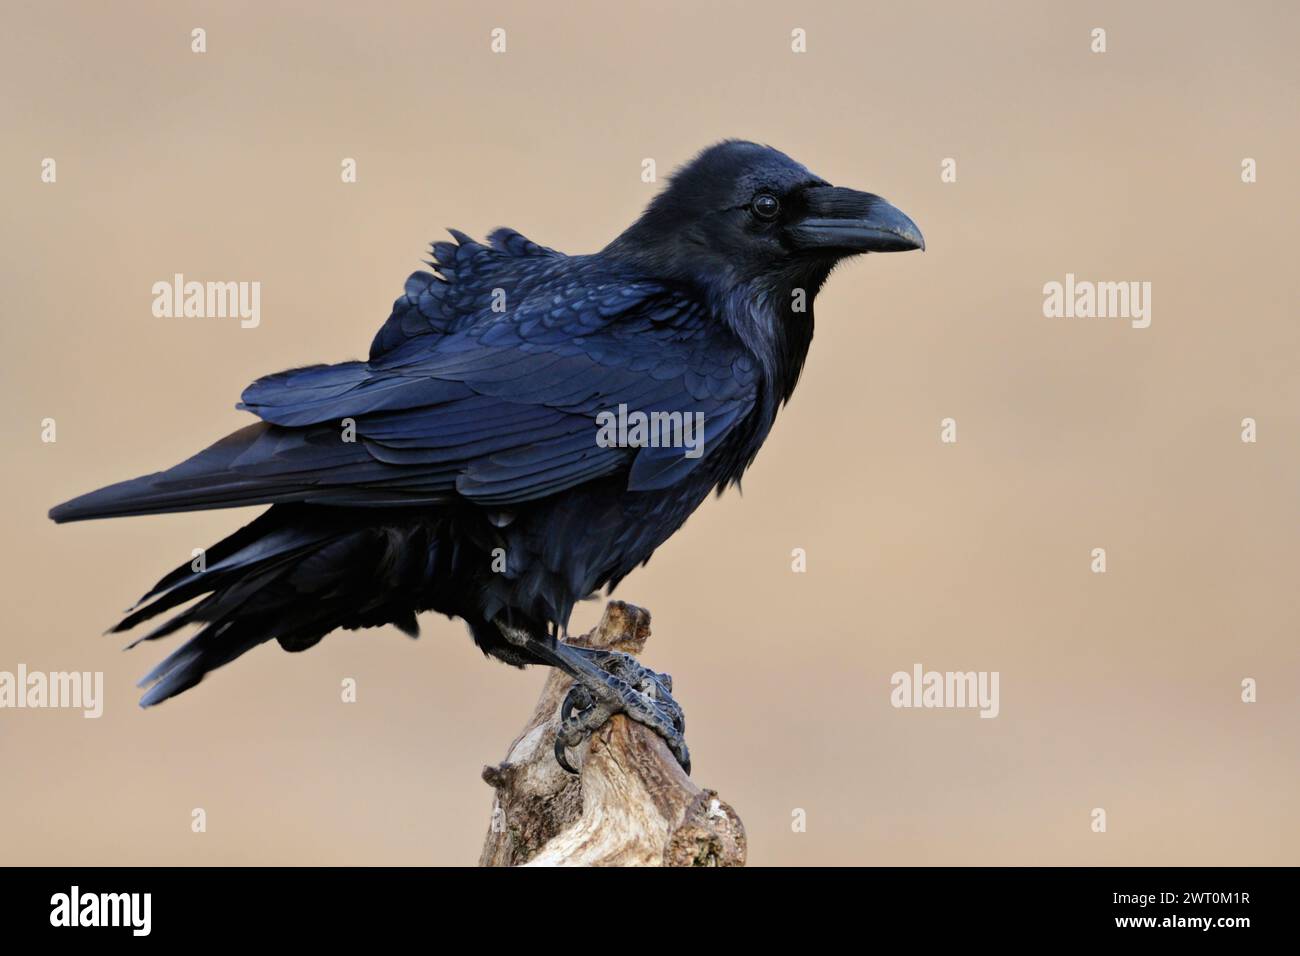 Rabe ( Corvus corax ) auf seinem Lieblingsaussichtspunkt vor einem sauberen Hintergrund, schwersten Passinenvogel, riesigen einheimischen Vogel, Wildtiere, EU Stockfoto